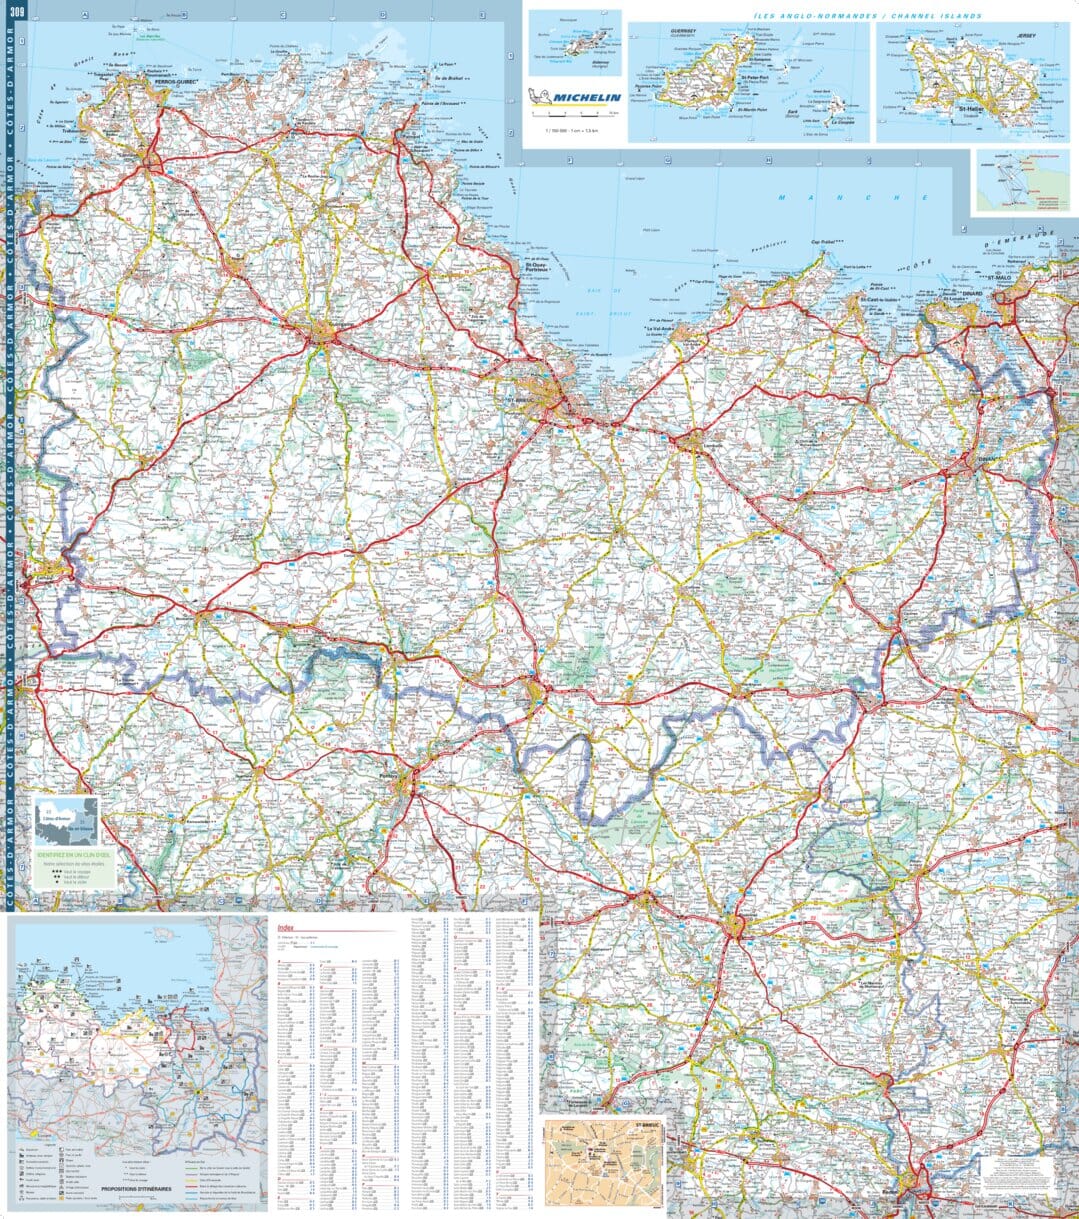 Carte départementale n° 309 - Côtes d'Armor & Ille-et-Vilaine | Michelin carte pliée Michelin 